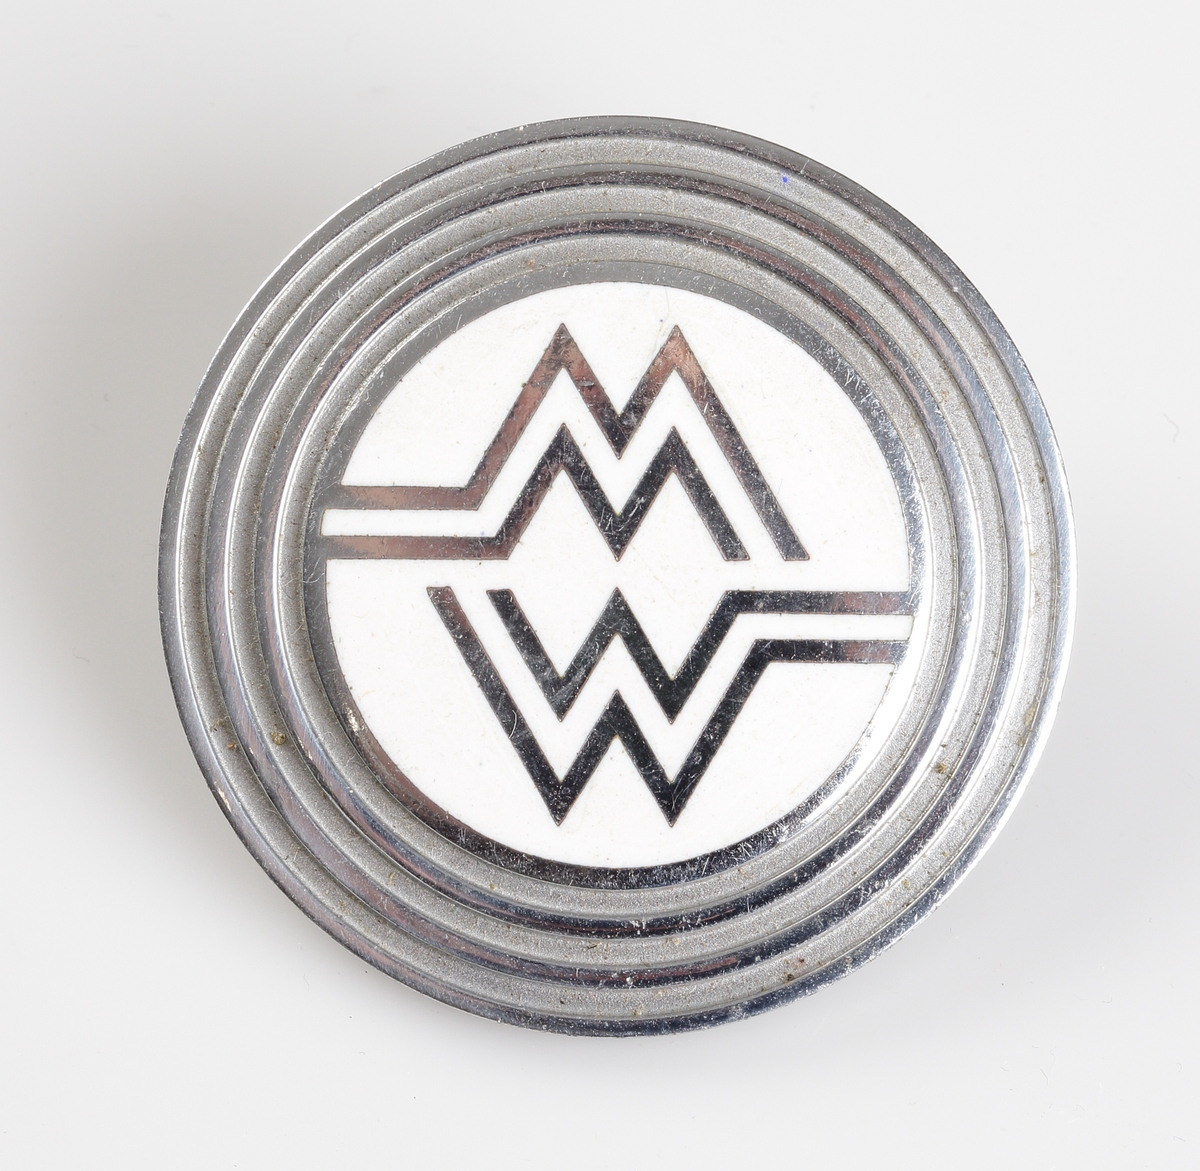 Emblem för detaljhandelsföretaget MW (Montgomery Ward).
